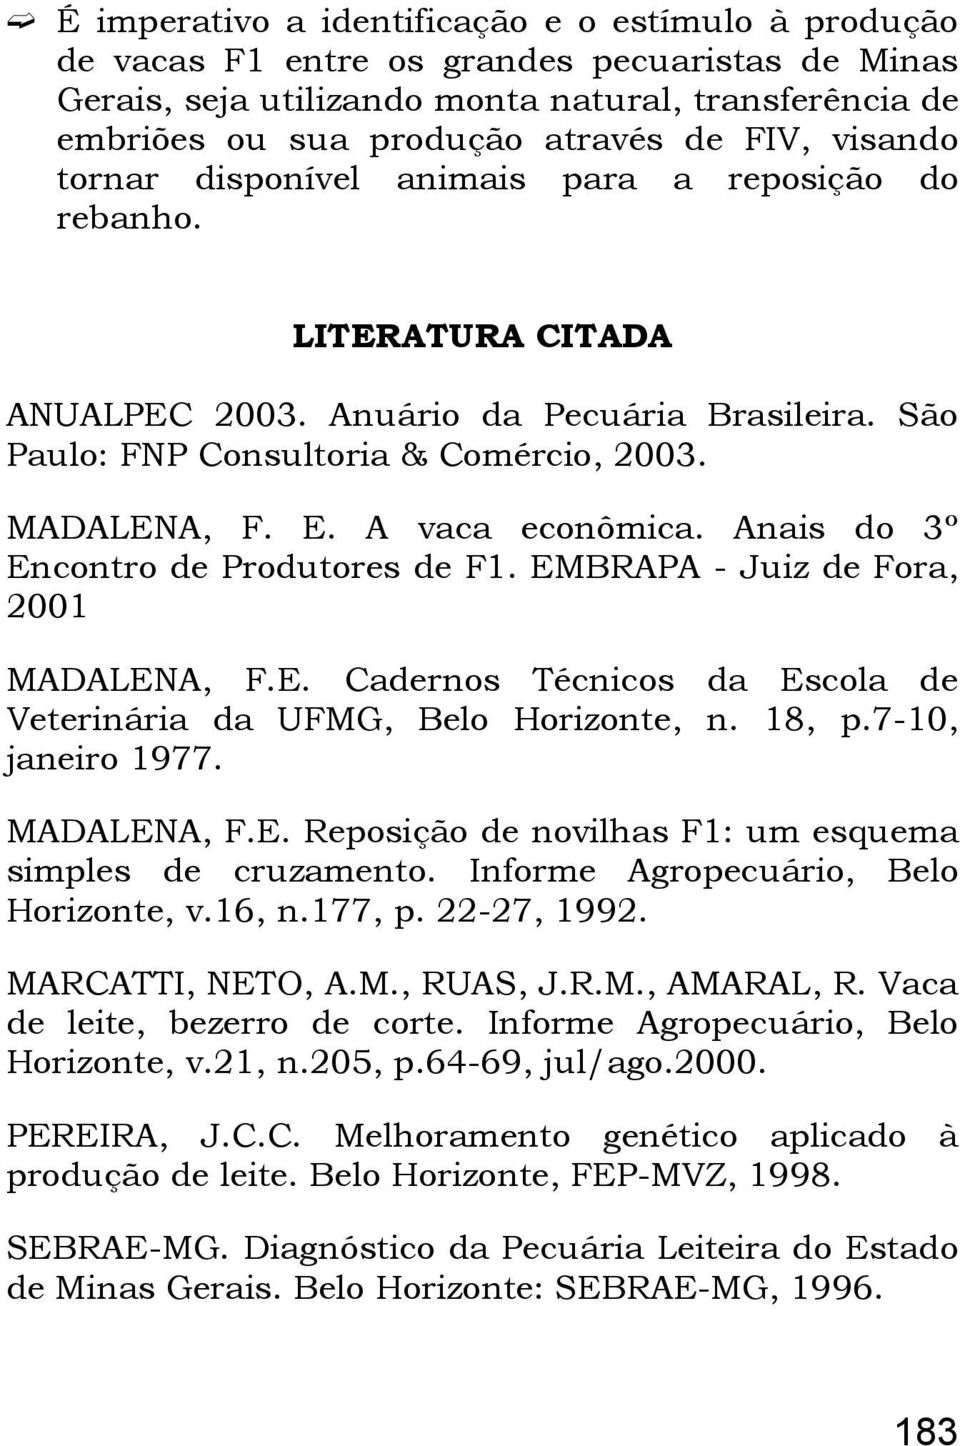 A vaca econômica. Anais do 3º Encontro de Produtores de F1. EMBRAPA - Juiz de Fora, 2001 MADALENA, F.E. Cadernos Técnicos da Escola de Veterinária da UFMG, Belo Horizonte, n. 18, p.7-10, janeiro 1977.